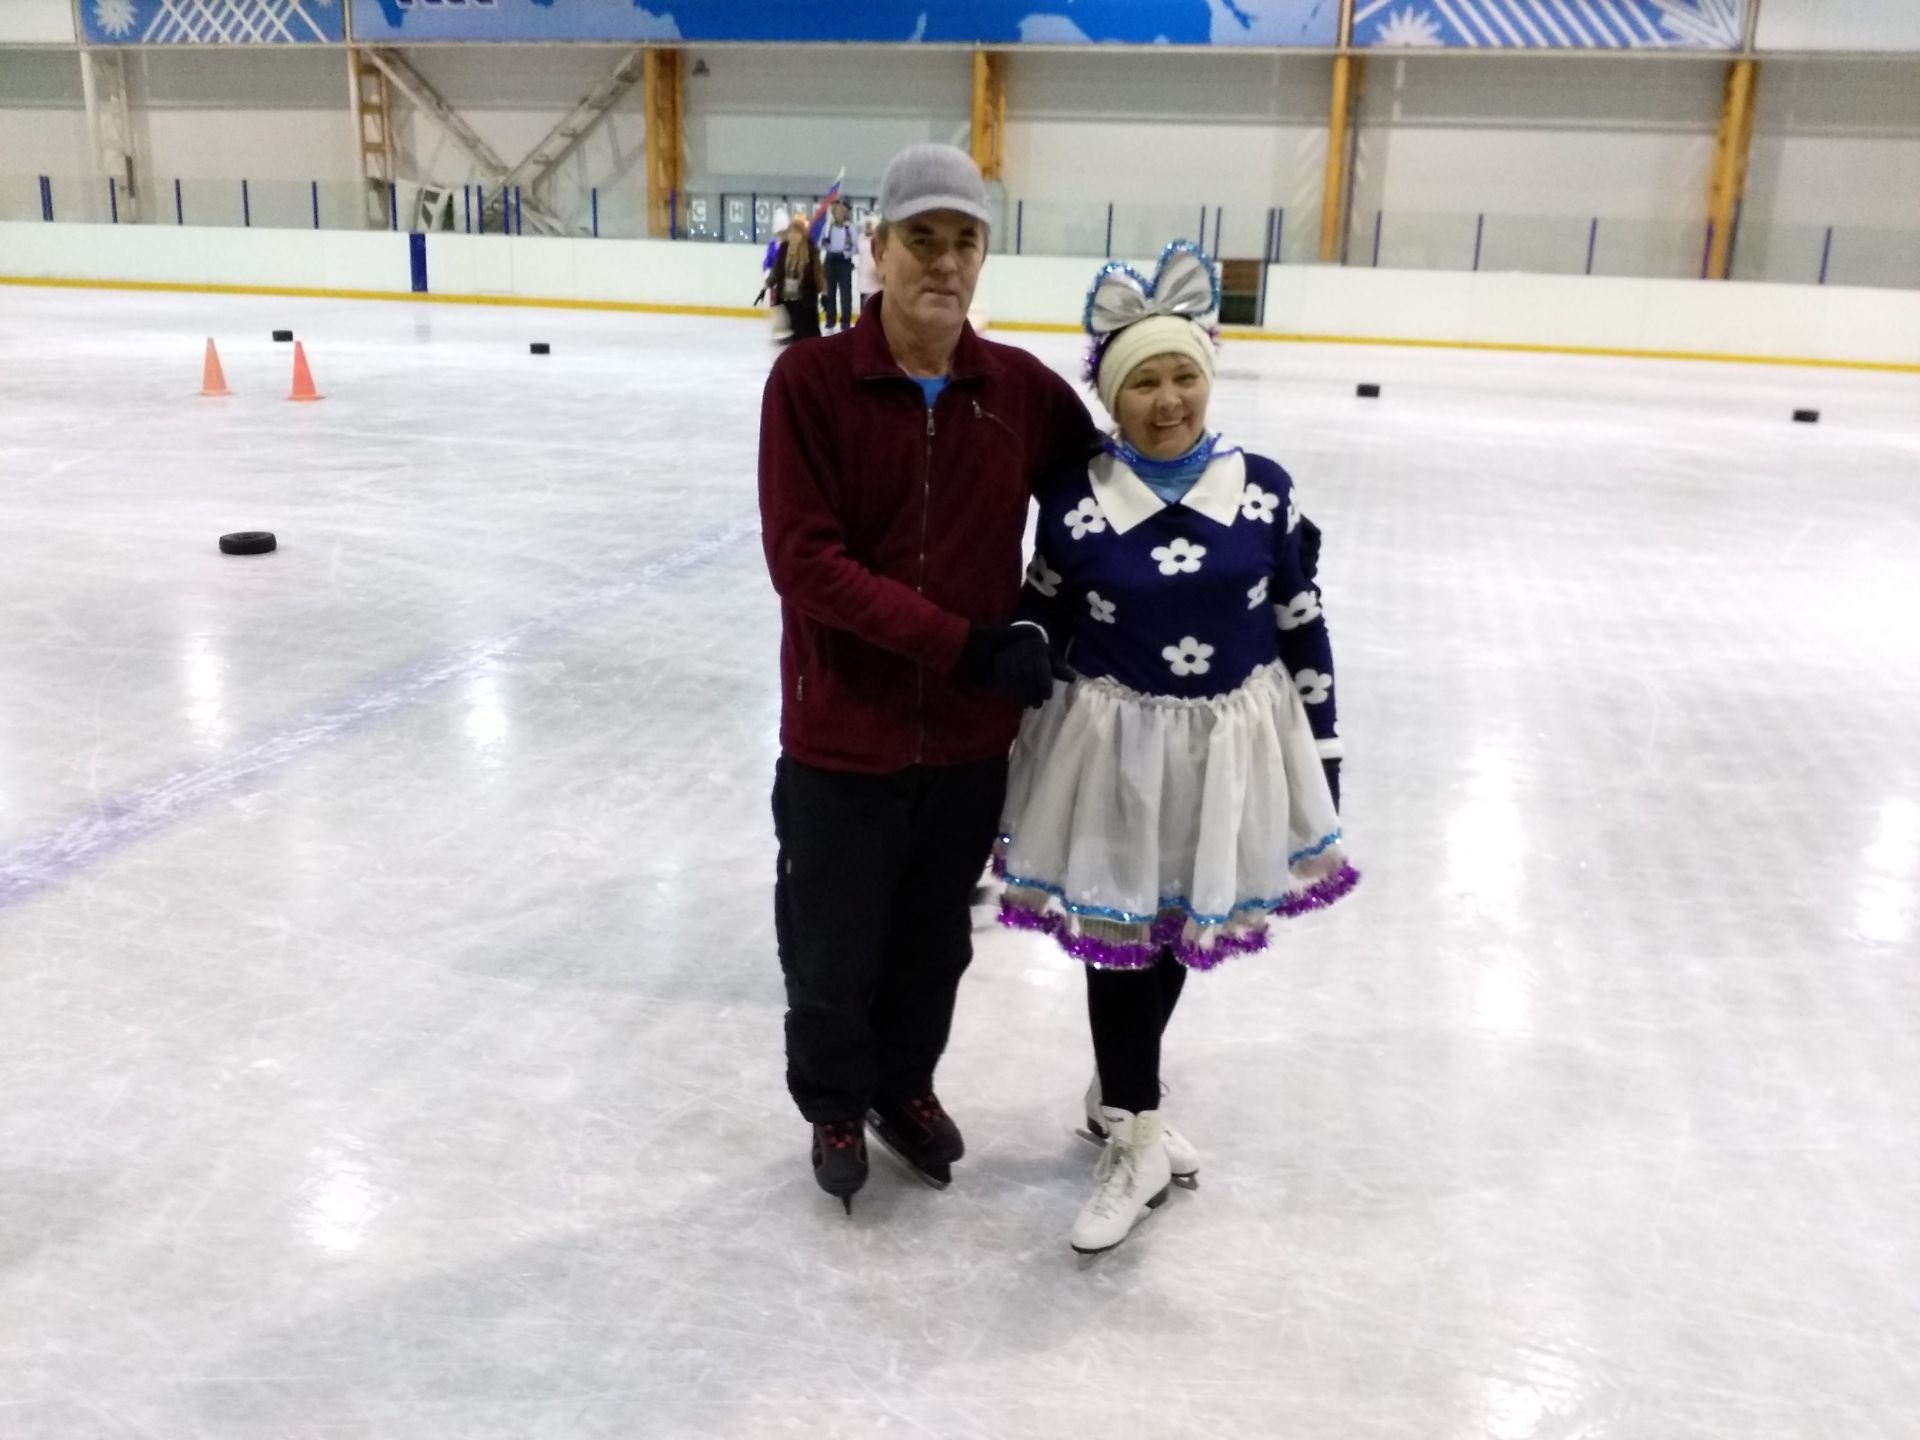 Активные пенсионеры Камских Полян встречают новогодние праздники на ледовом катке